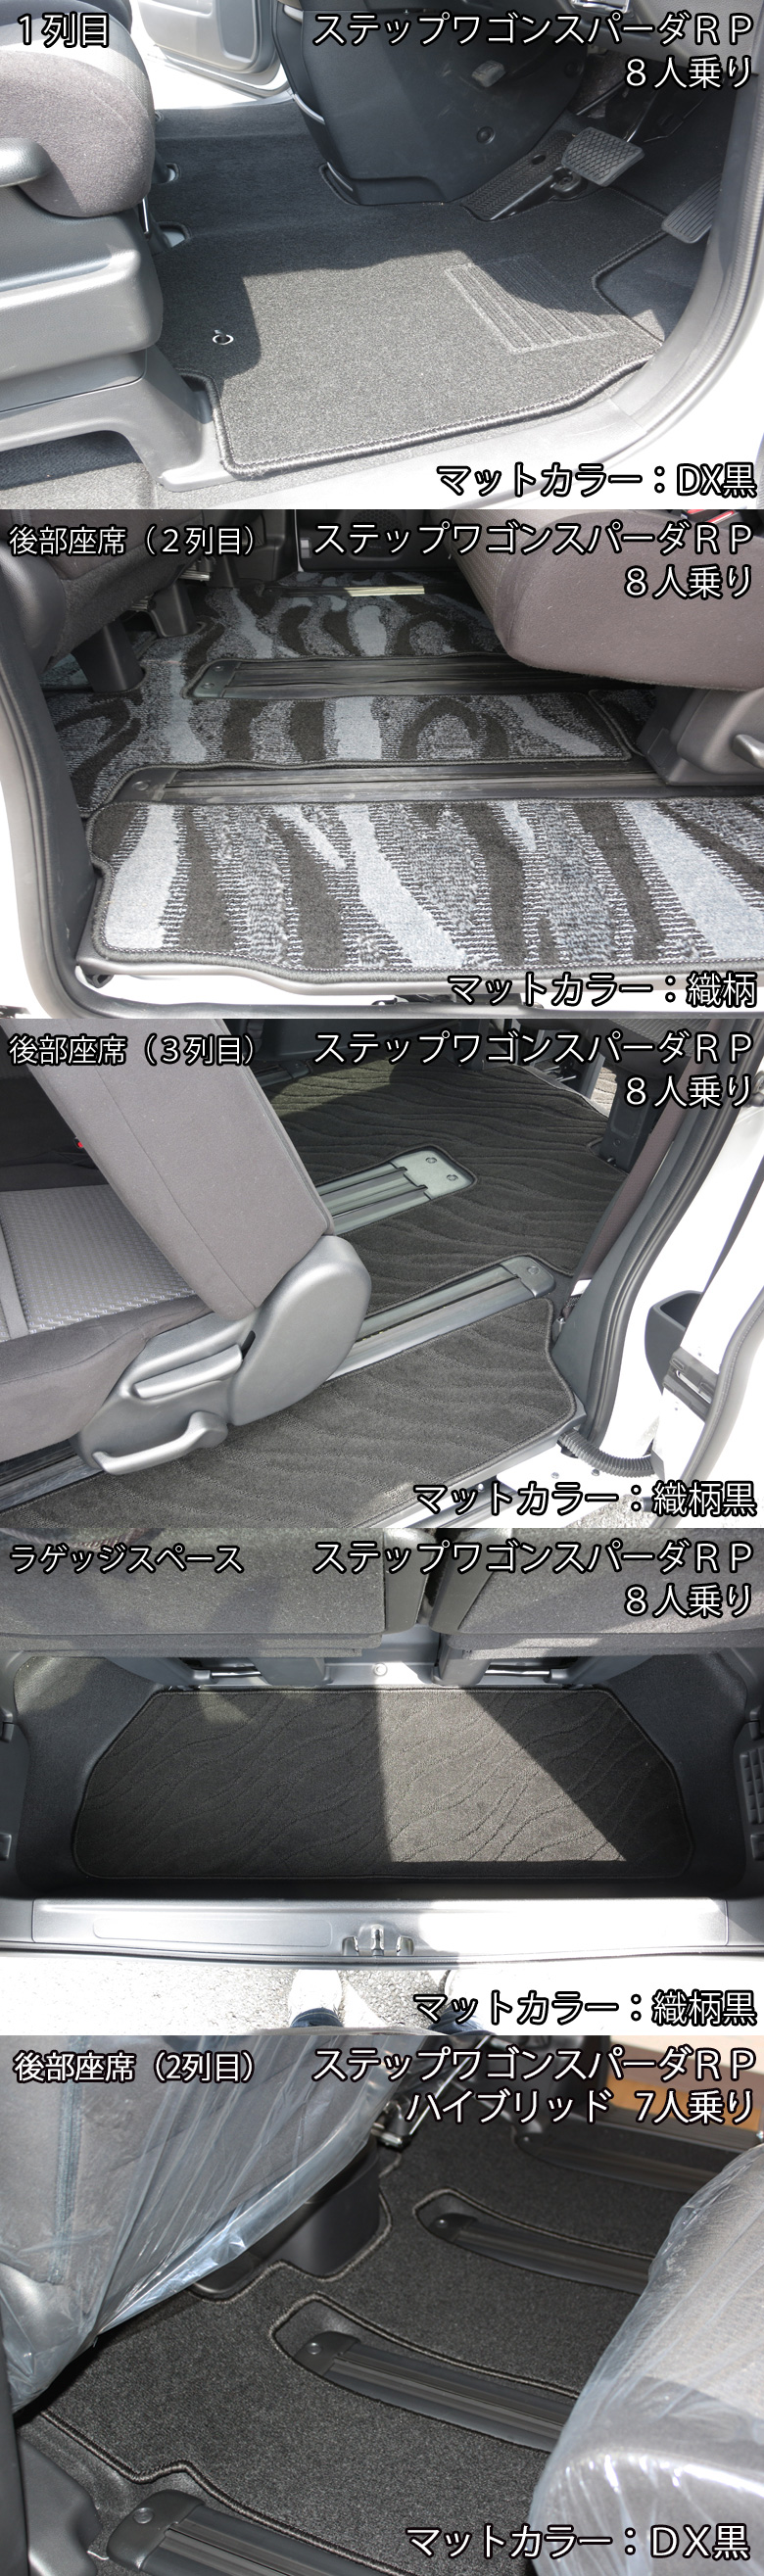 三菱 デリカD:5 デリカ D5 CV系 フロアマット  エントランスマット カーマット 織シリーズ フロアーマット フロアシートカバー 社外新品 - 1